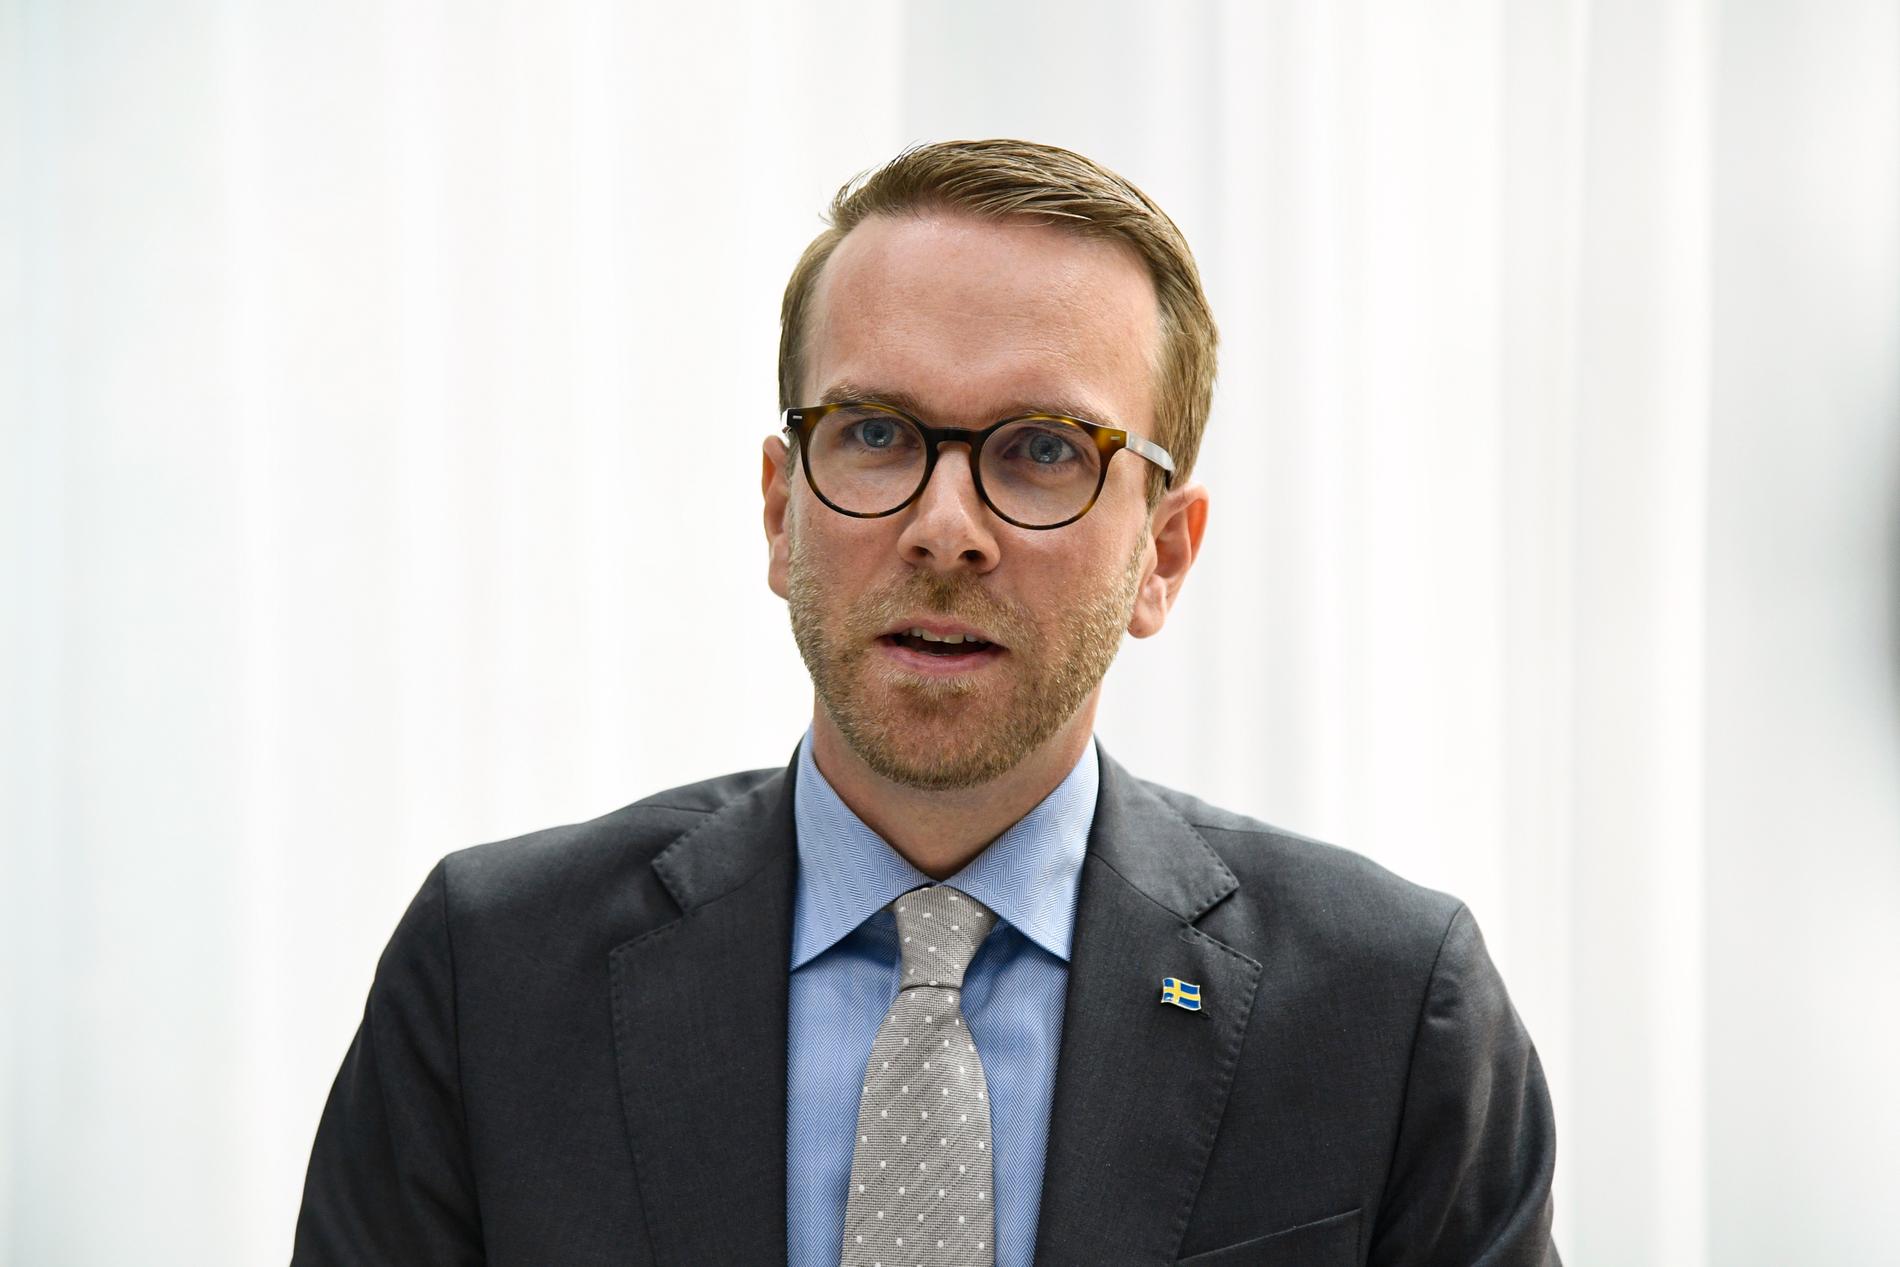 Bostads- och infrastrukturminister Andreas Carlson efter krismötet.